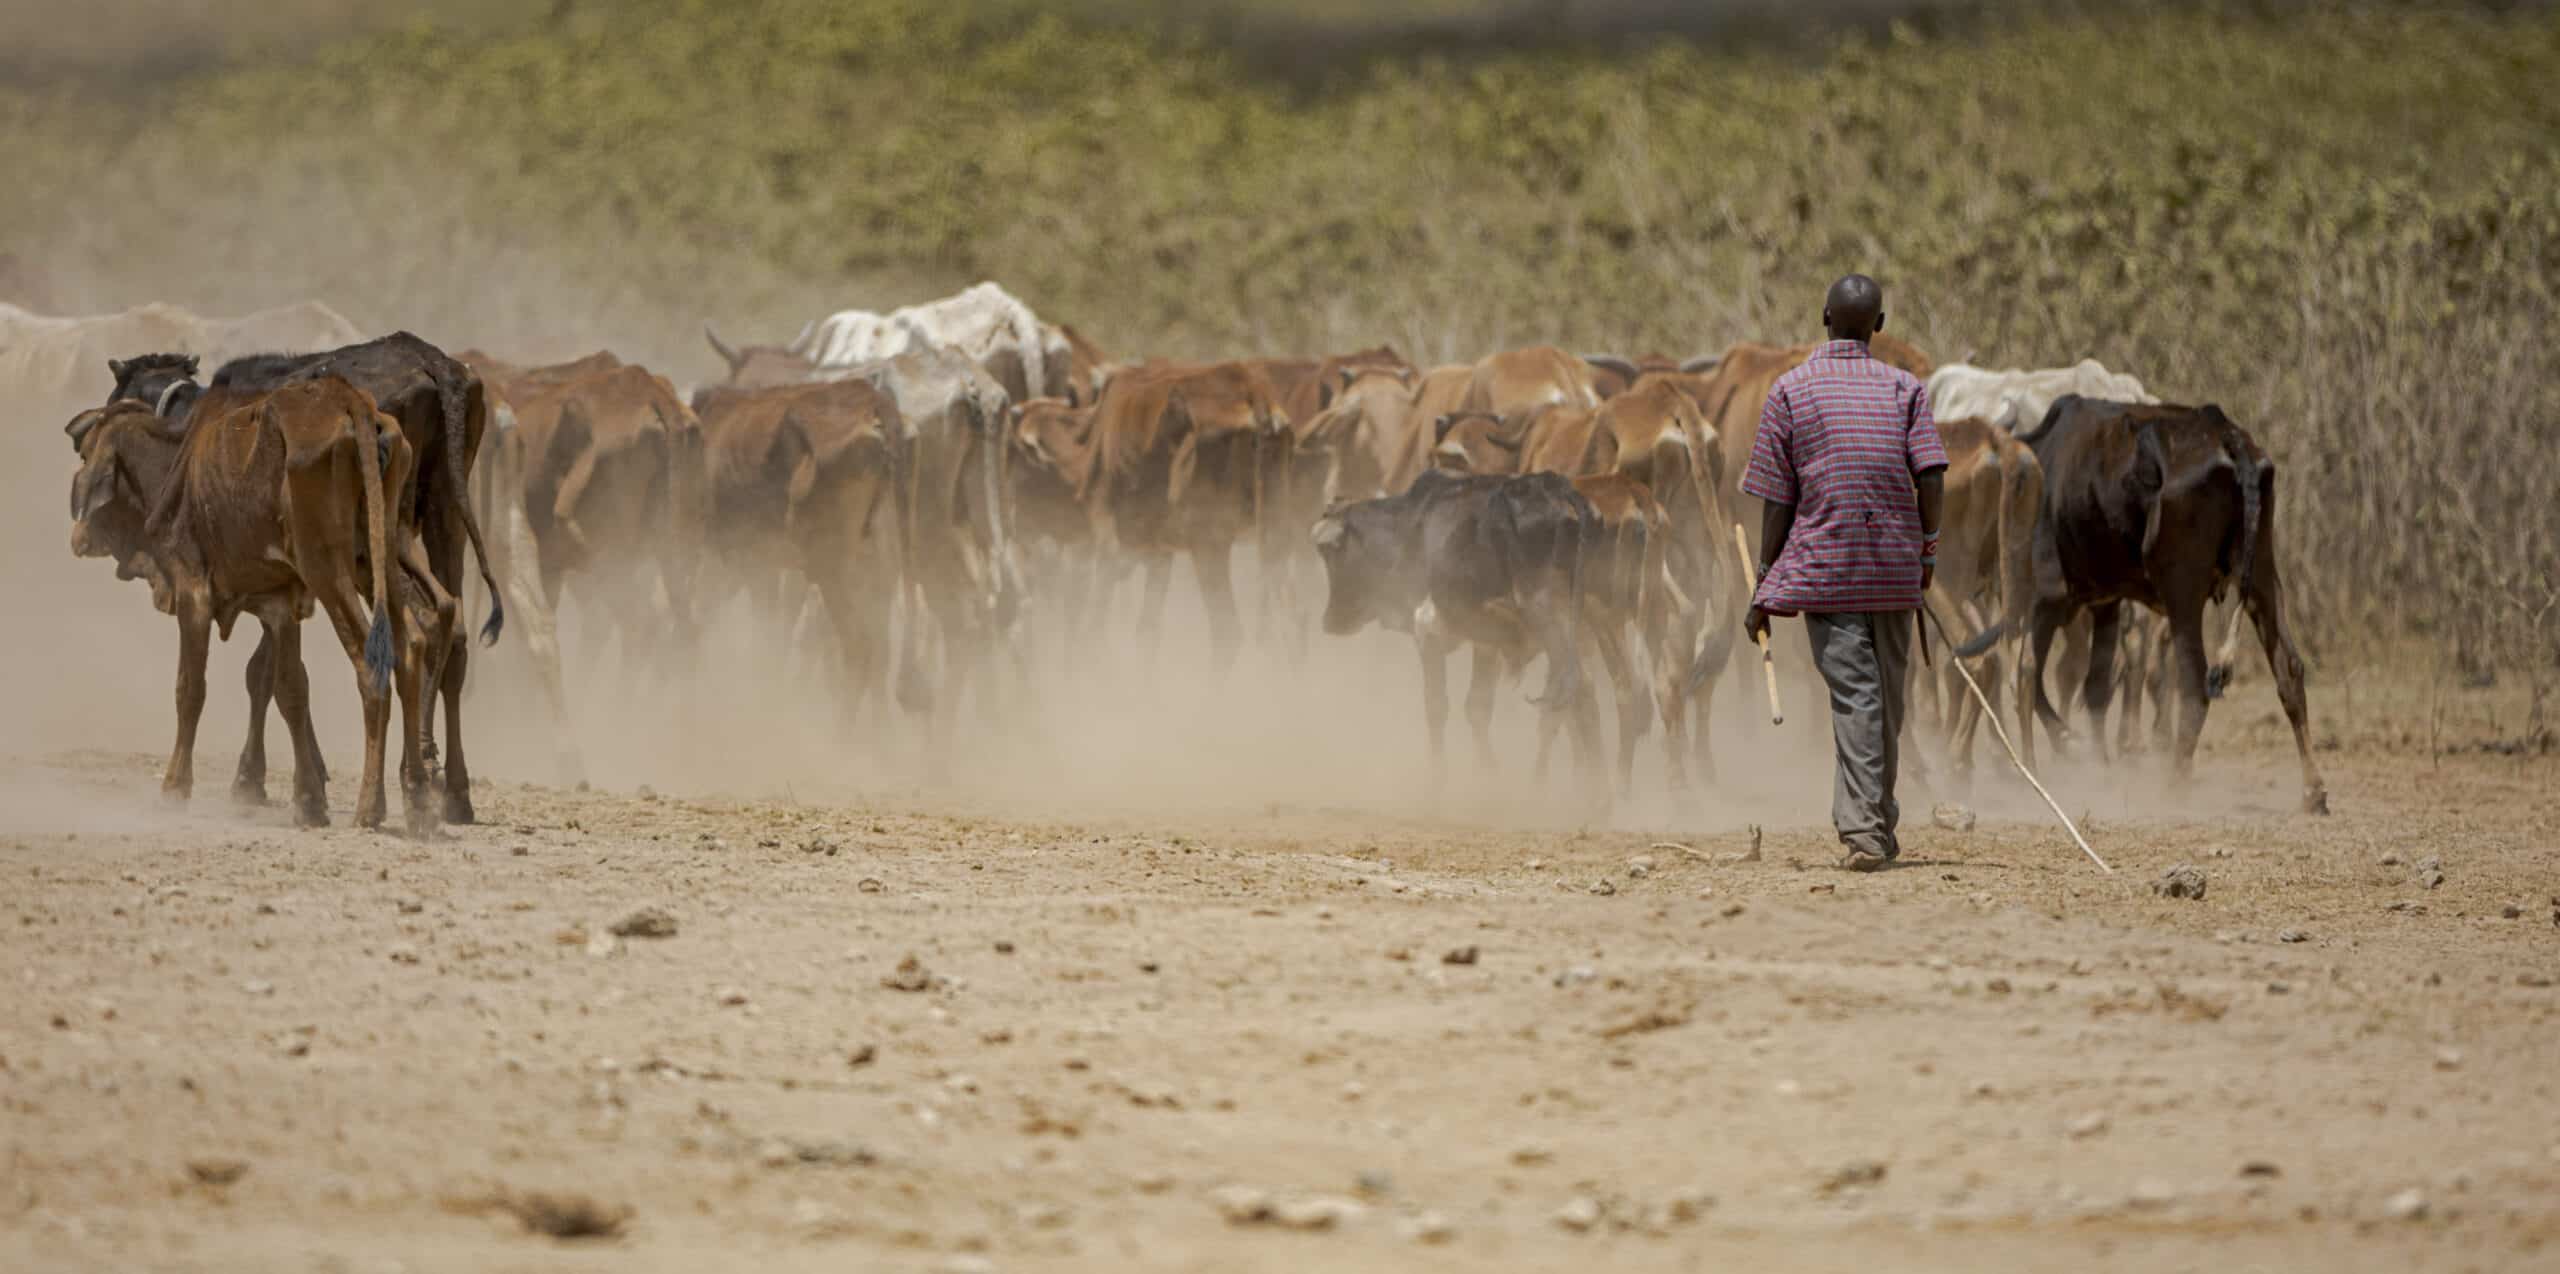 Ein Hirte geht hinter einer großen Herde staubaufwirbelnder Rinder auf einem trockenen, sandigen Pfad her. Die Landschaft ist karg und unter einem dunstigen Himmel größtenteils flach. © Fotografie Tomas Rodriguez